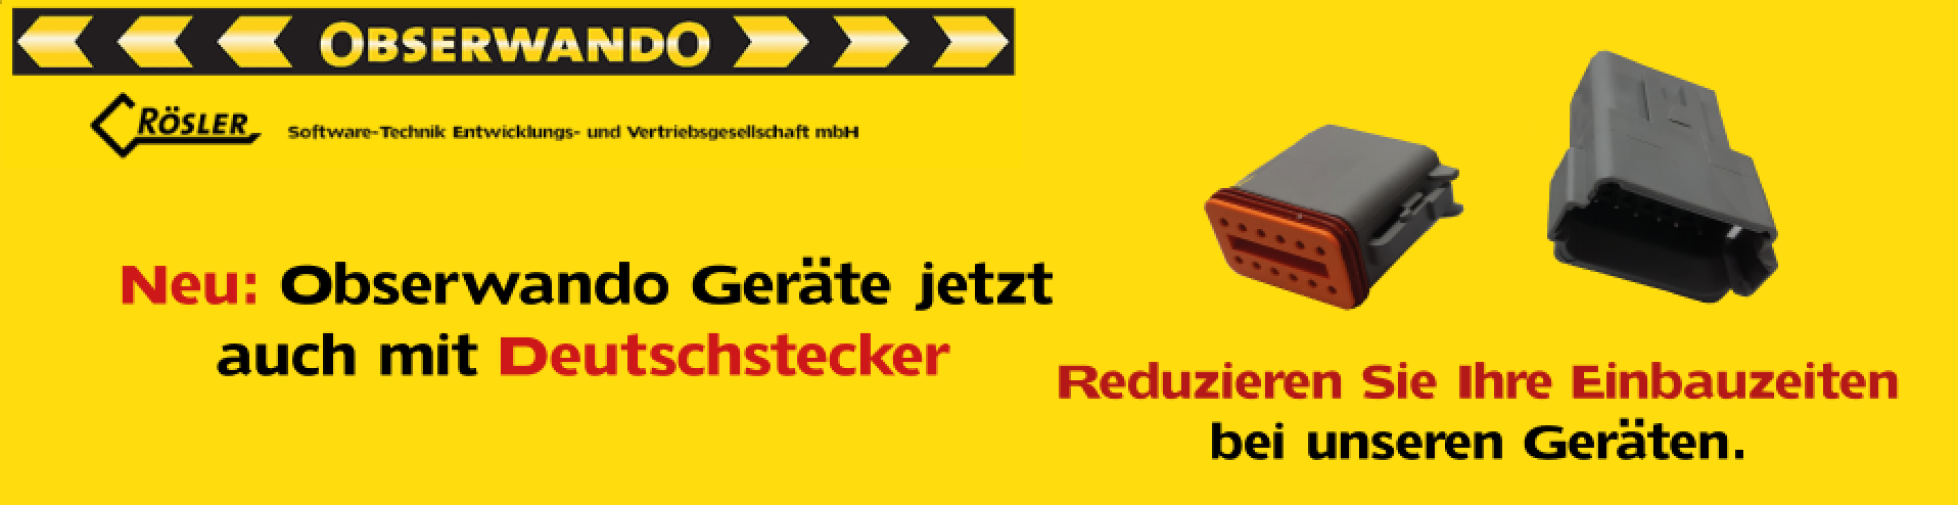 Banner_Deutschstecker